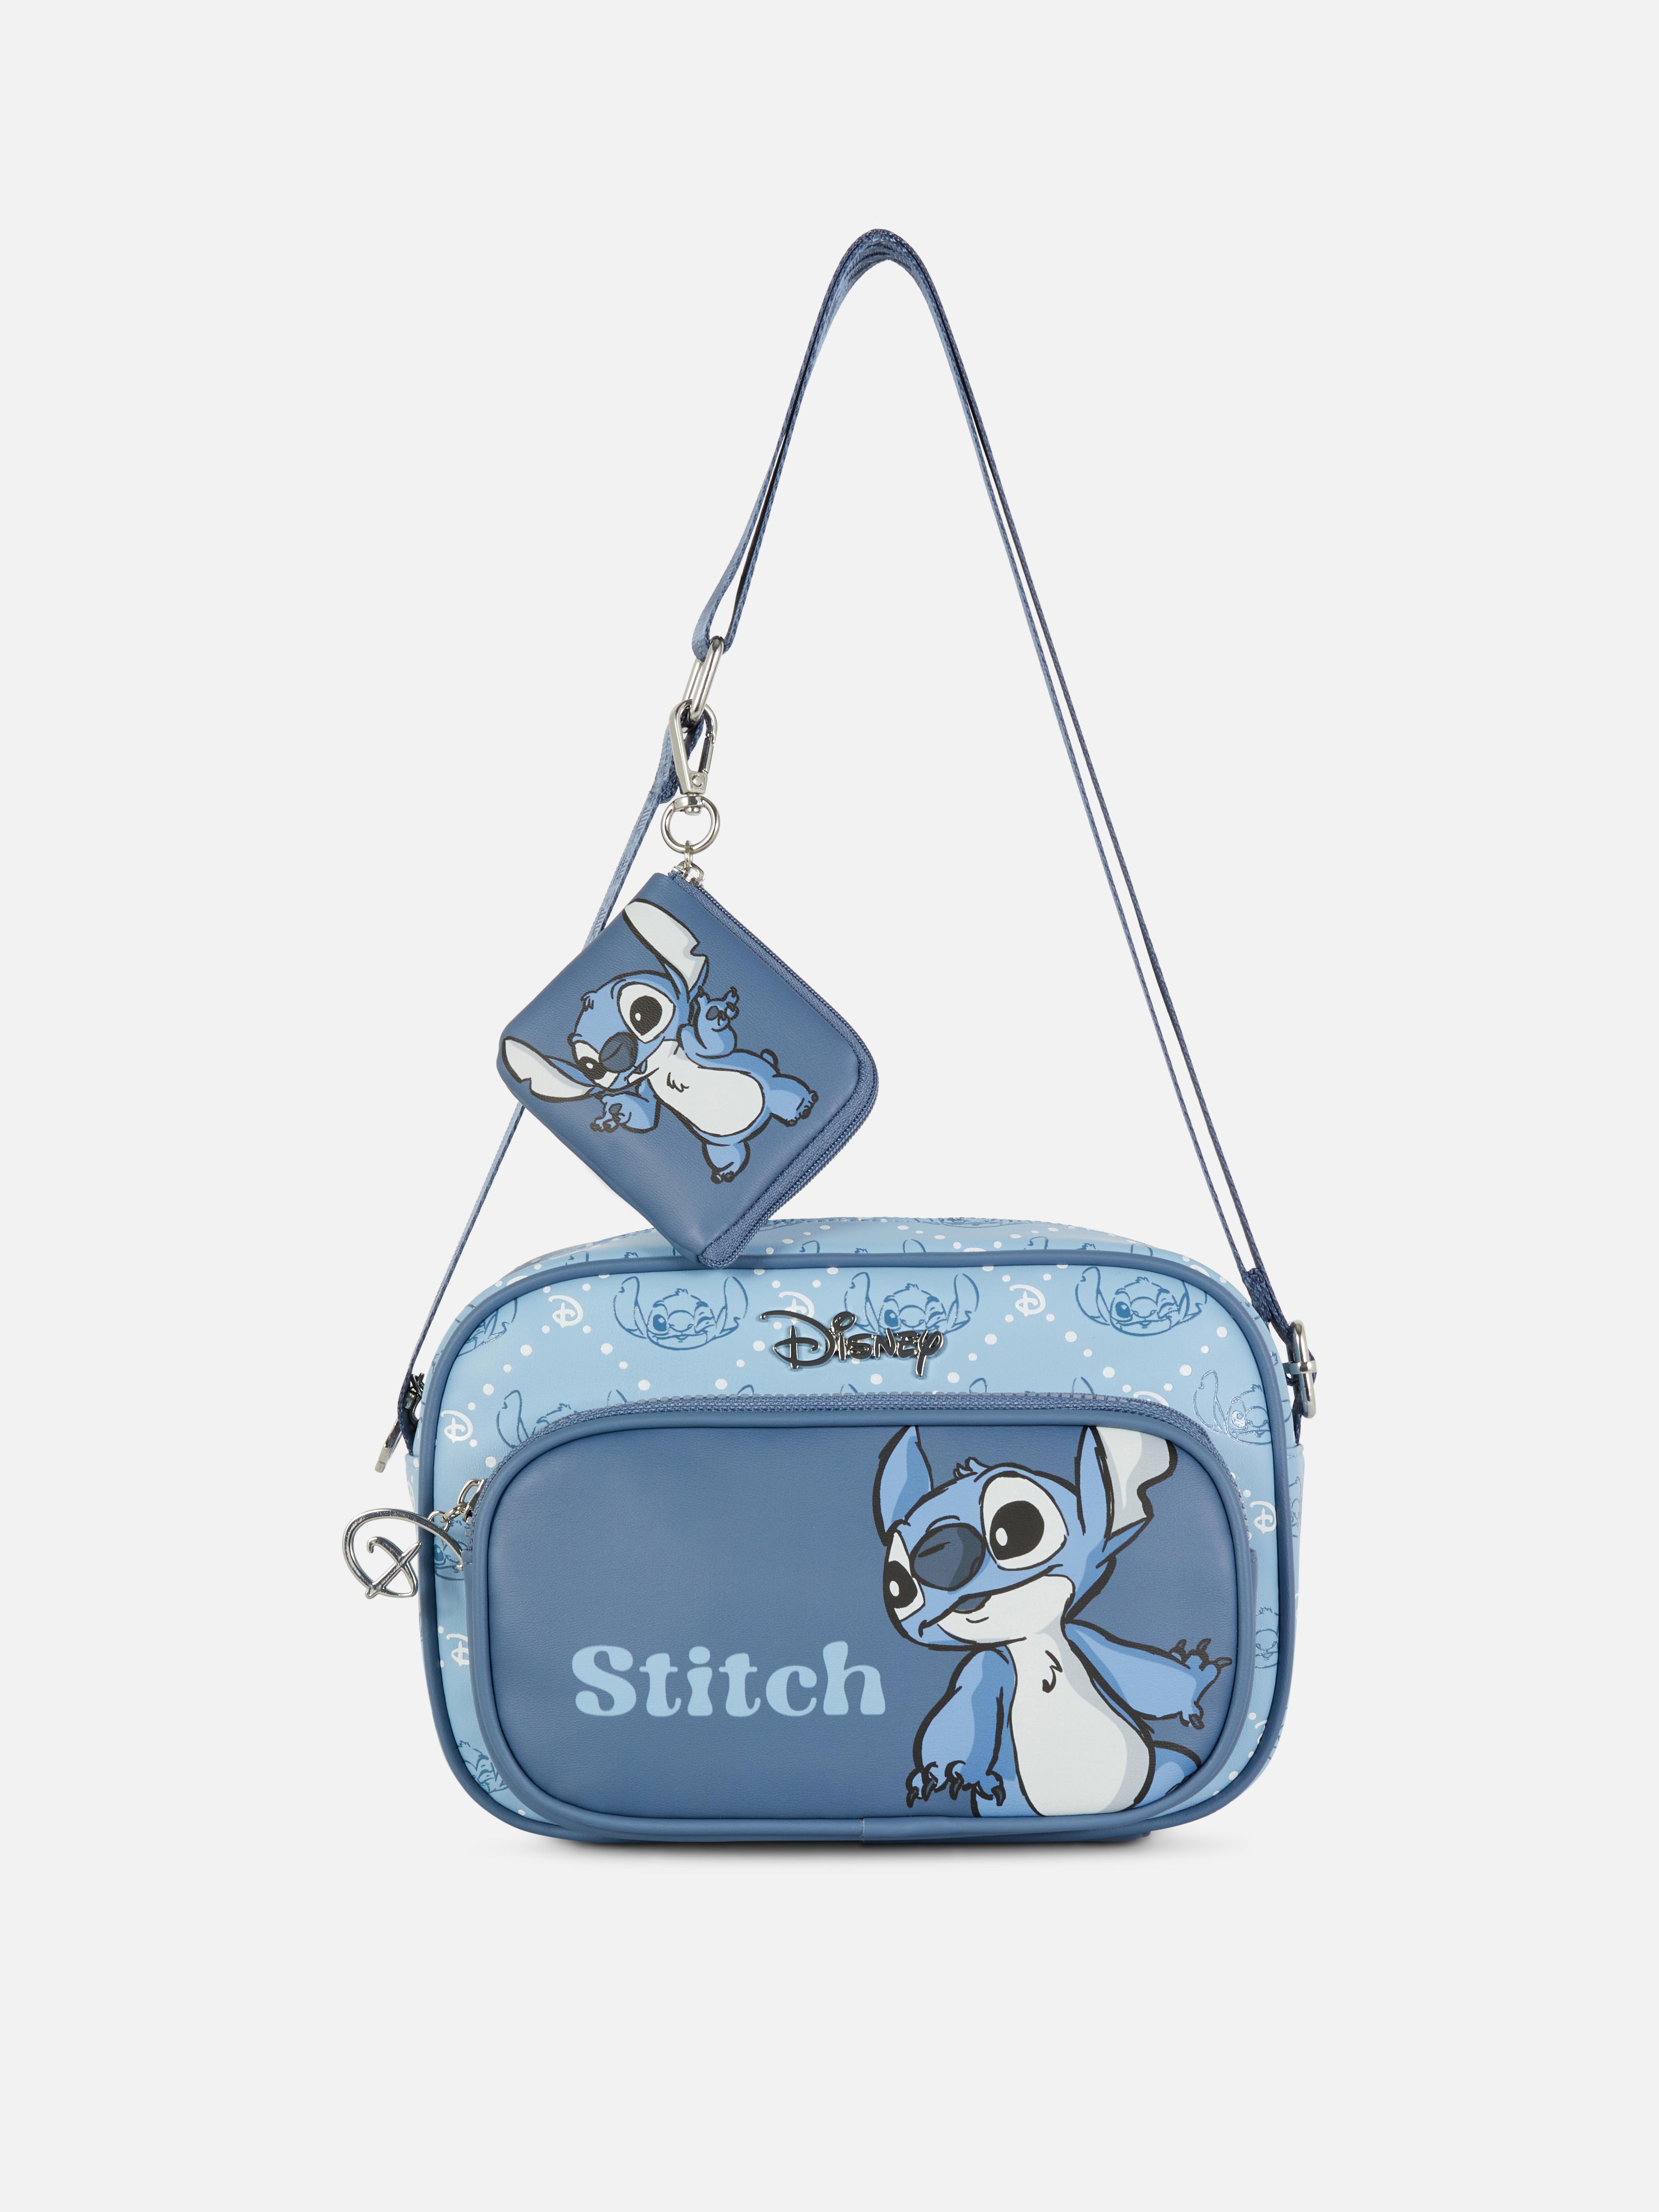 Bandolera en relieve de Lilo y Stitch de Disney